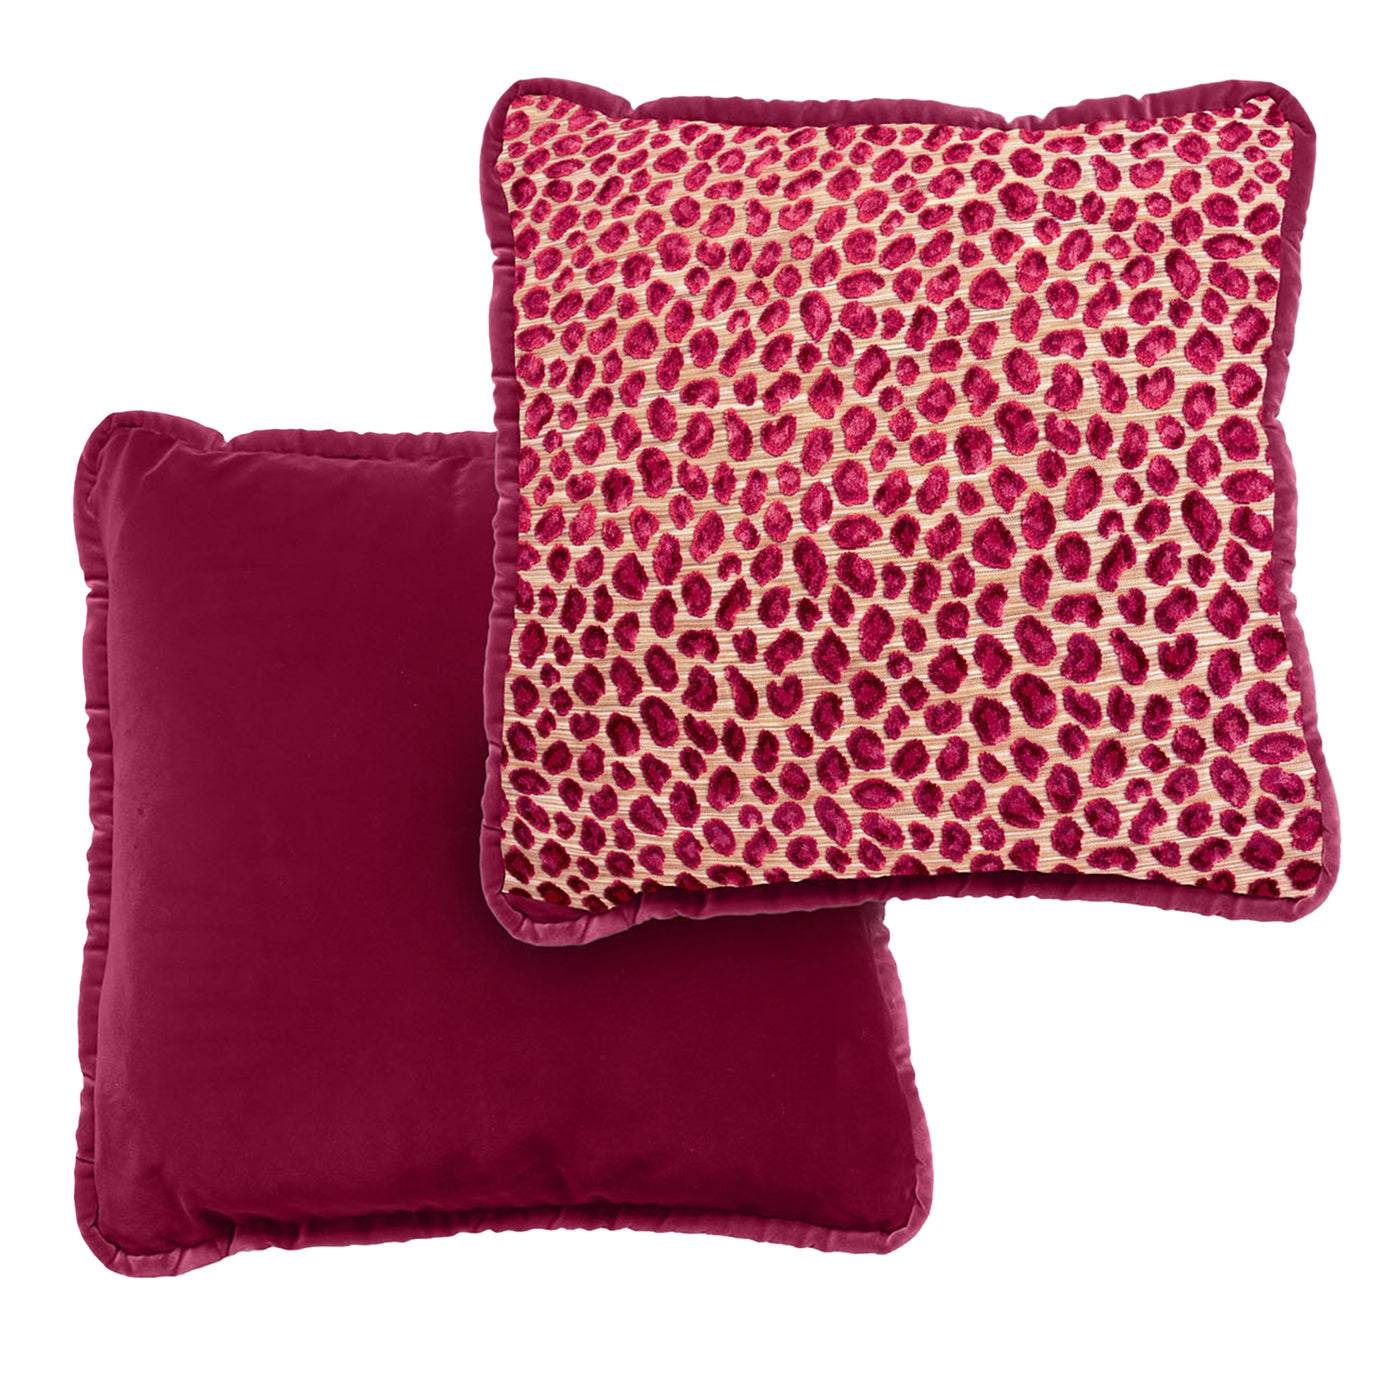 Cojín reversible de terciopelo de alta costura rojo y leopardo Glam - Vista alternativa 1